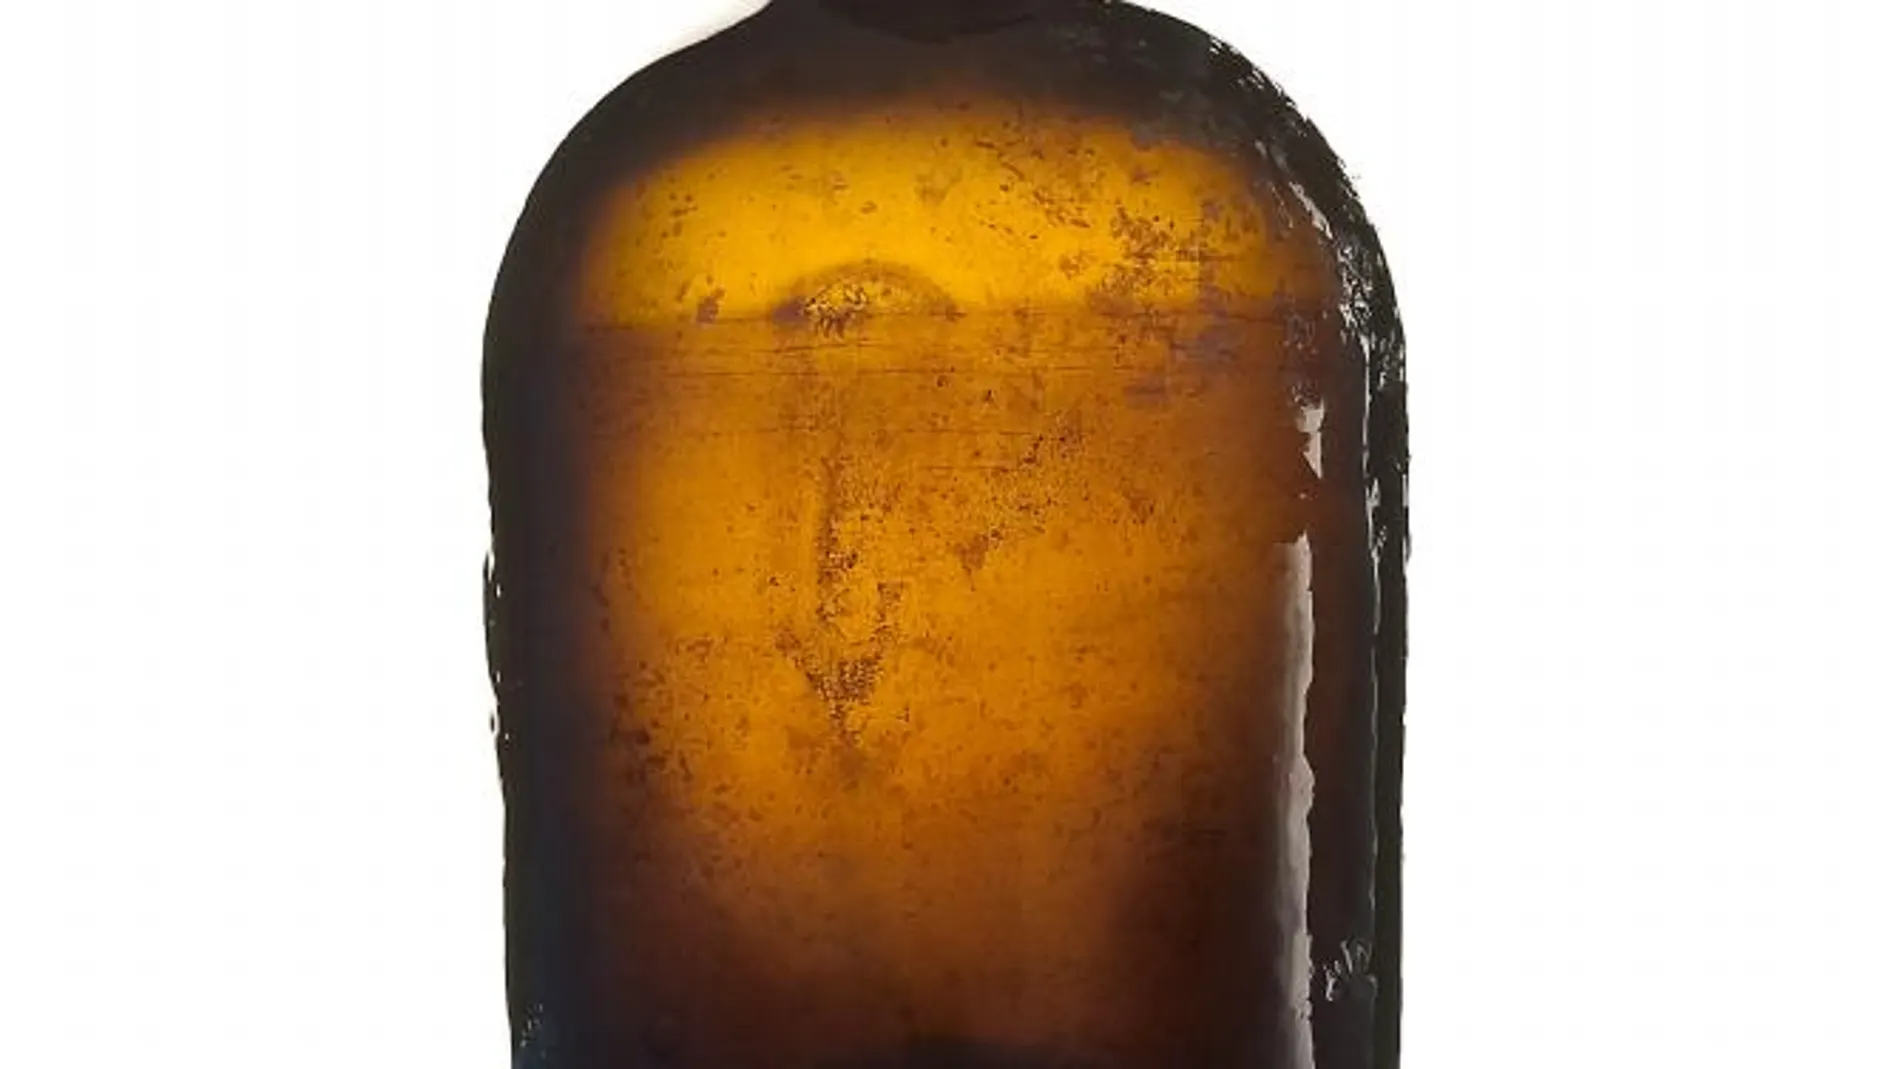 Una de las botellas halladas en el barco naufragado